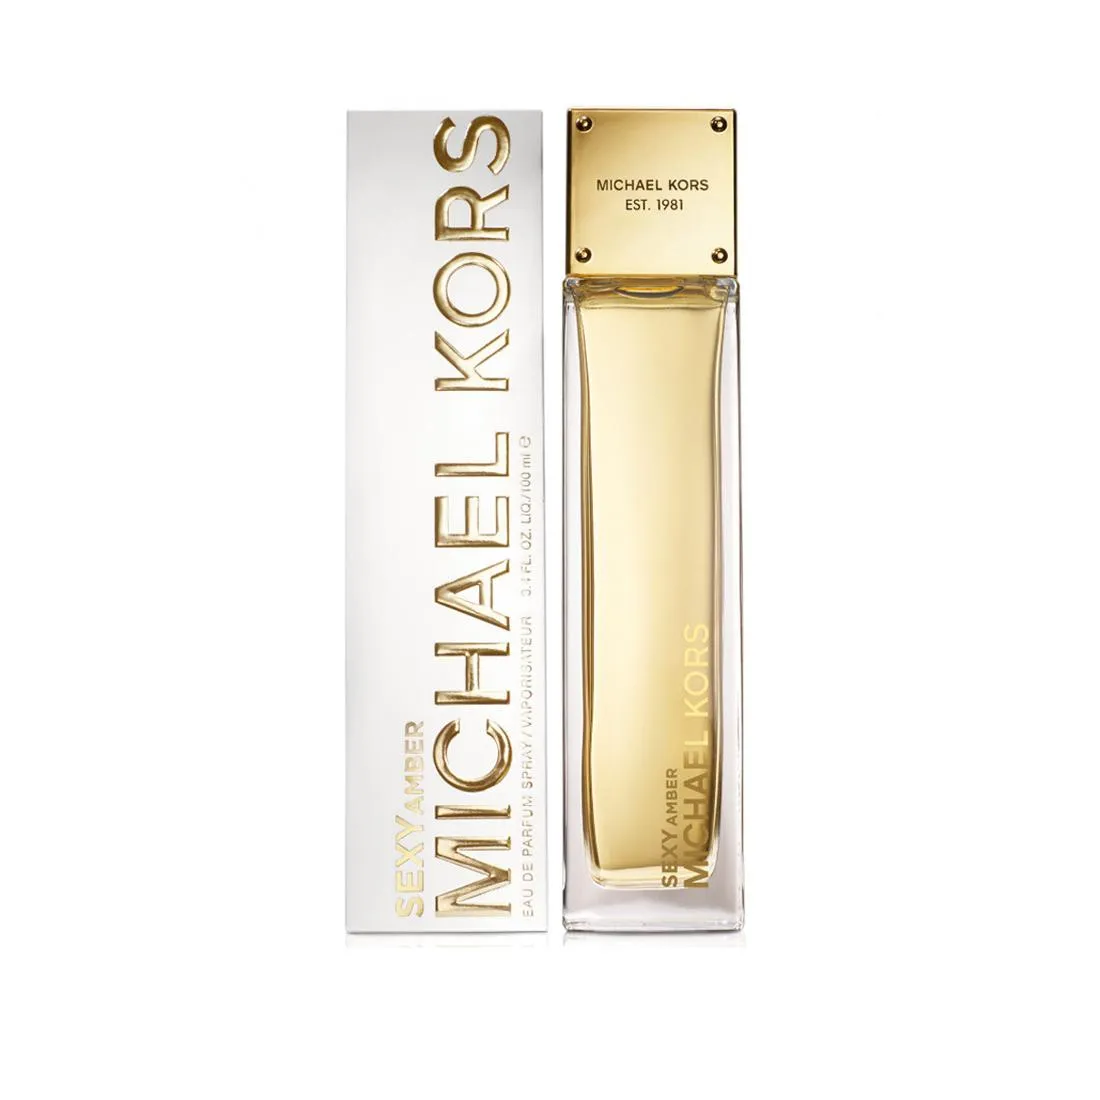 MICHAEL KORS Perfume 34 oz EDP Spray for Women by MICHAEL KORS New In Box  885192433368  eBay